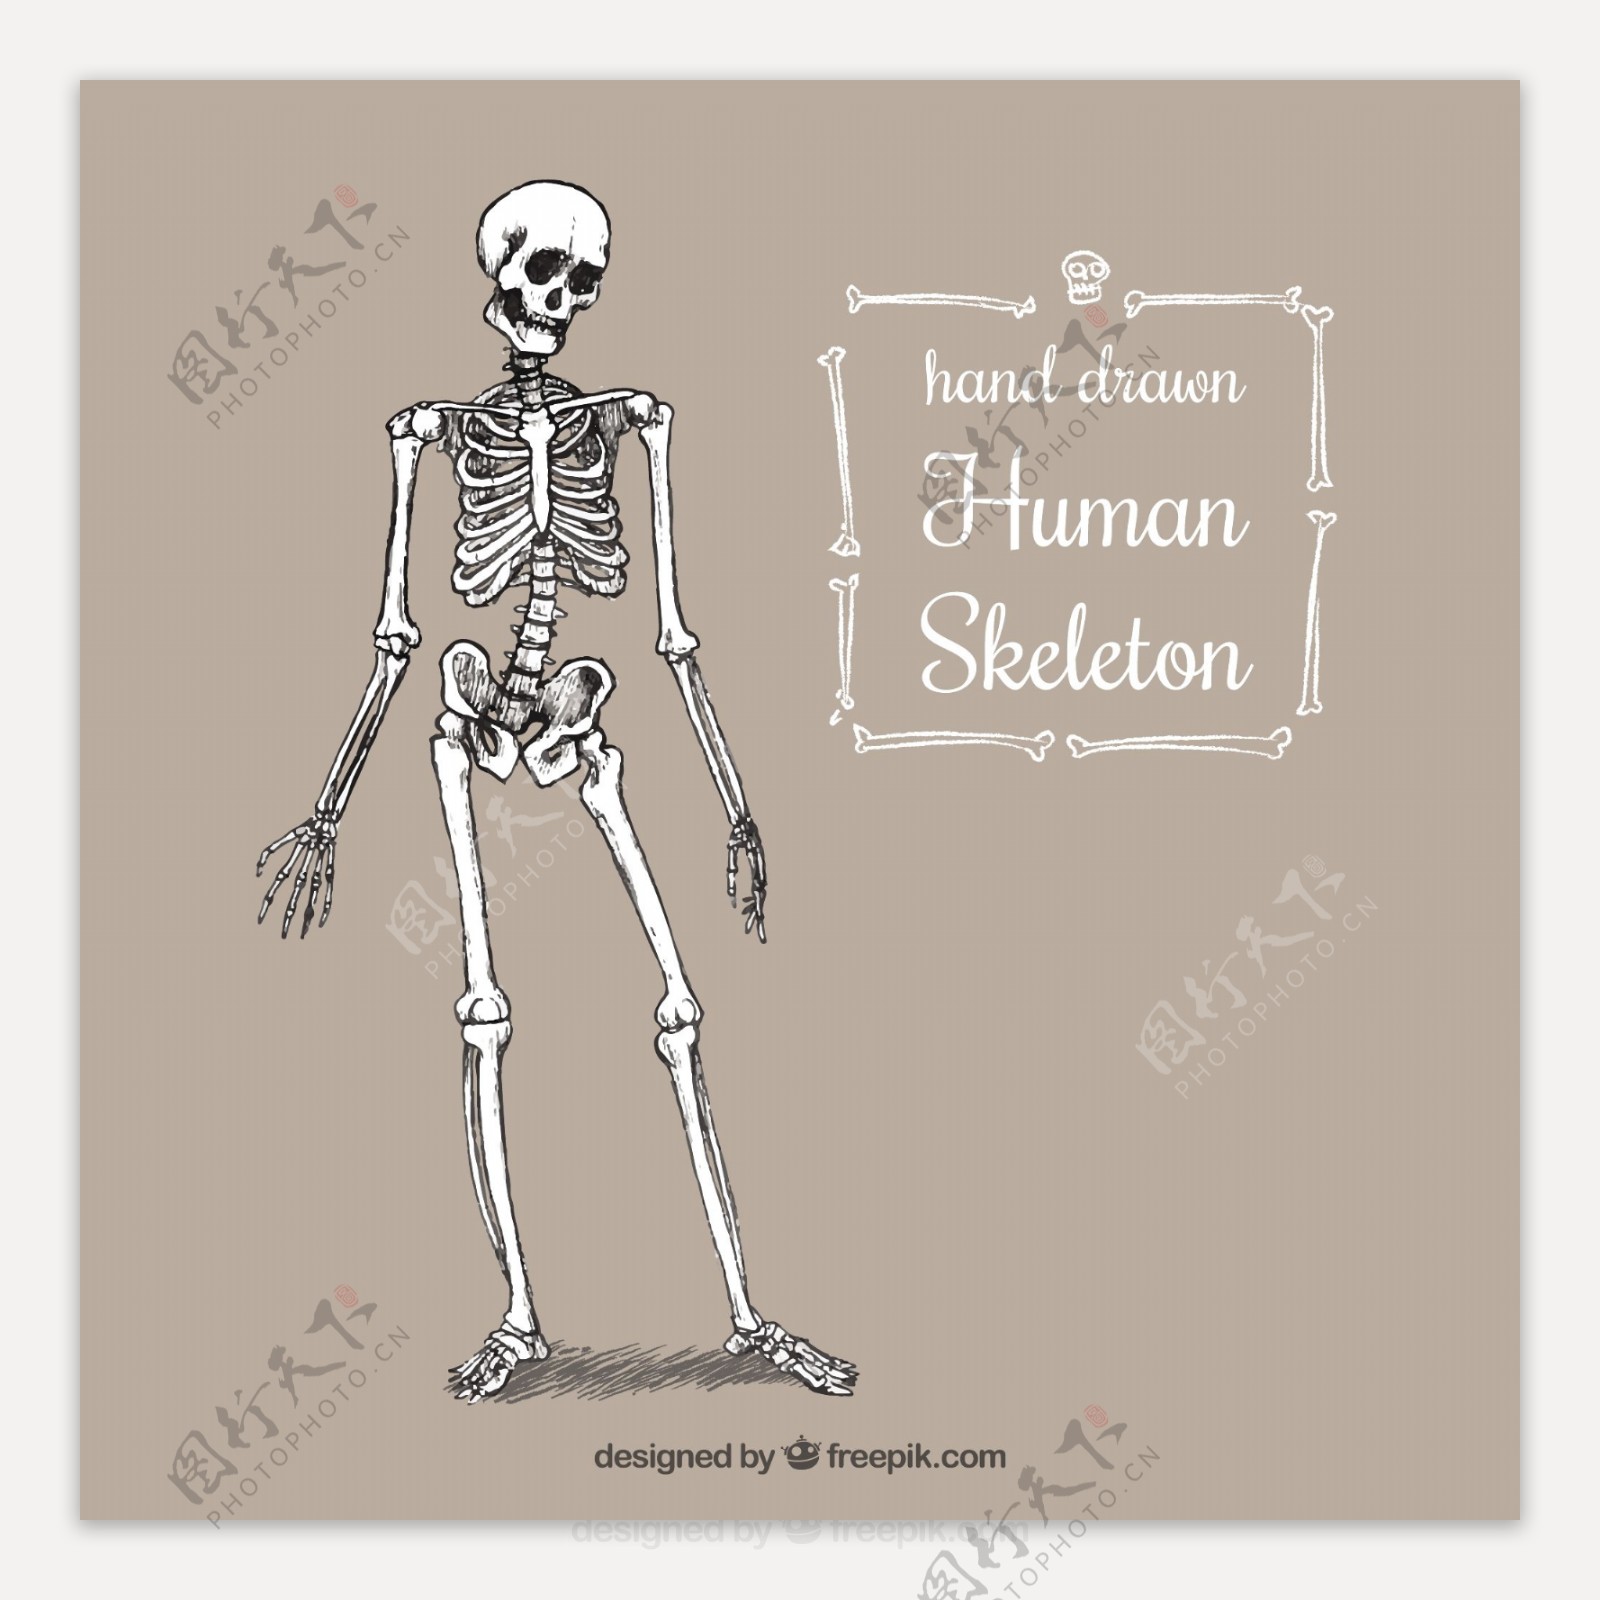 手绘人体骨骼